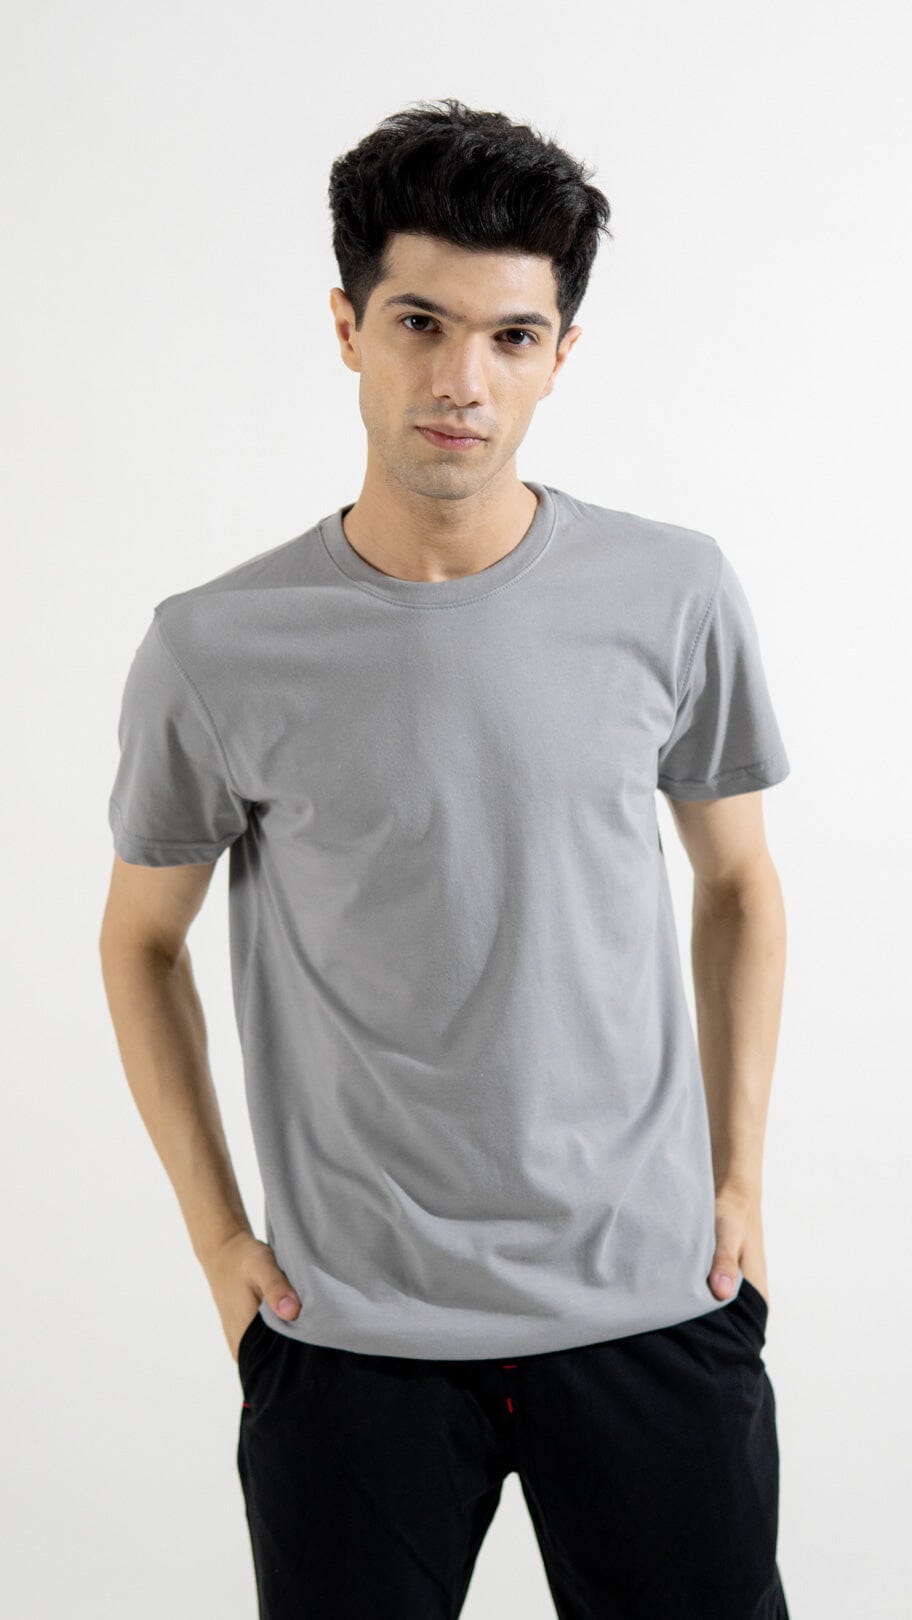 Polo Republica Men's Essentials Premium Tee Shirt - Pack of 2 Men's Tee Shirt Polo Republica Steel Grey S 